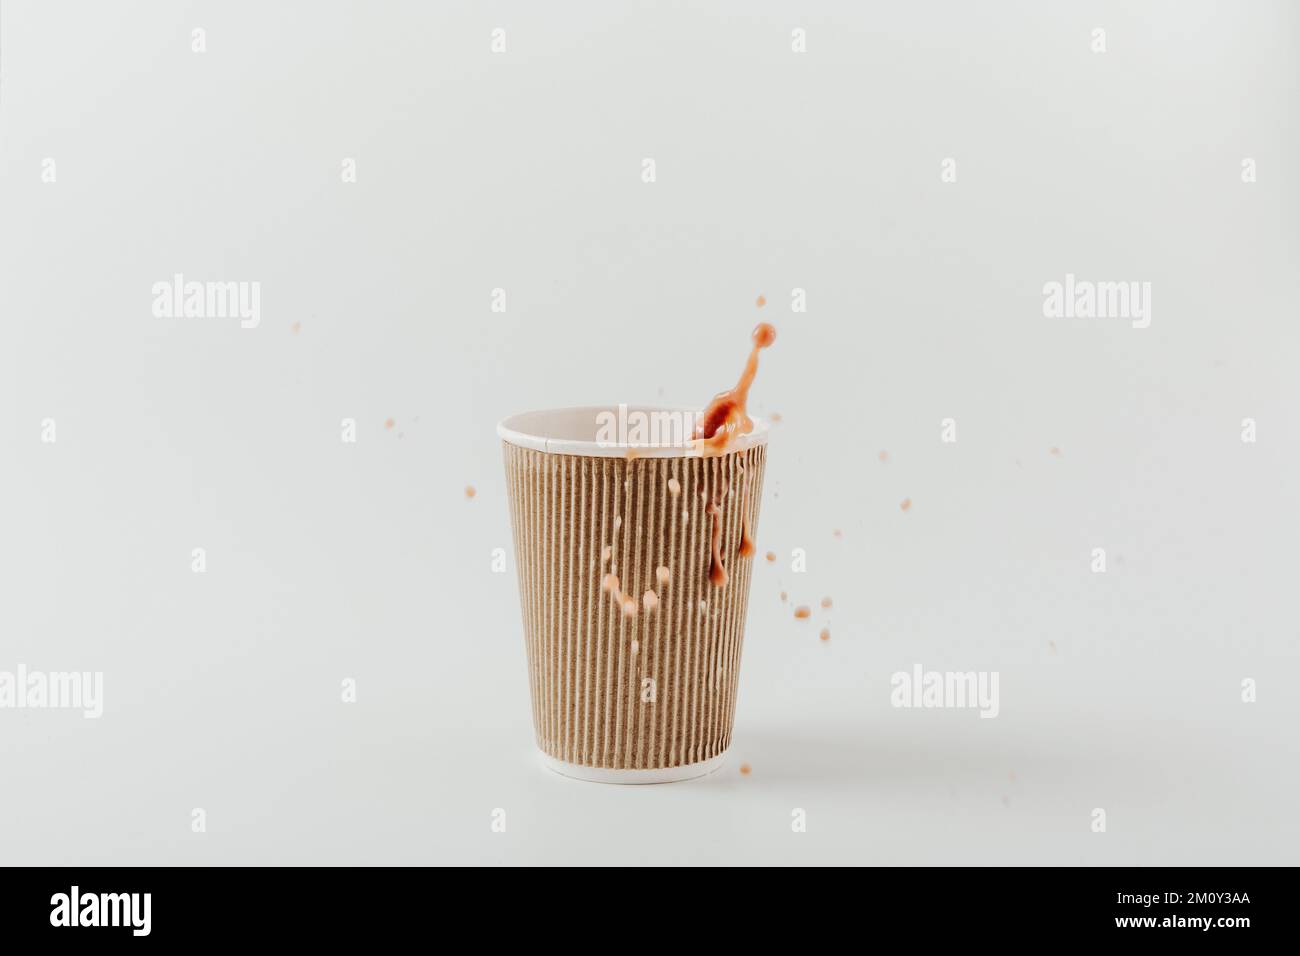 Pappbecher mit heißem Getränk und Spritzer. Weißer Hintergrund. Kaffee, Latte, Cappuccino, Kakao. Einweg-Pappbecher. Recycling und umweltfreundliches Konzept. Stockfoto